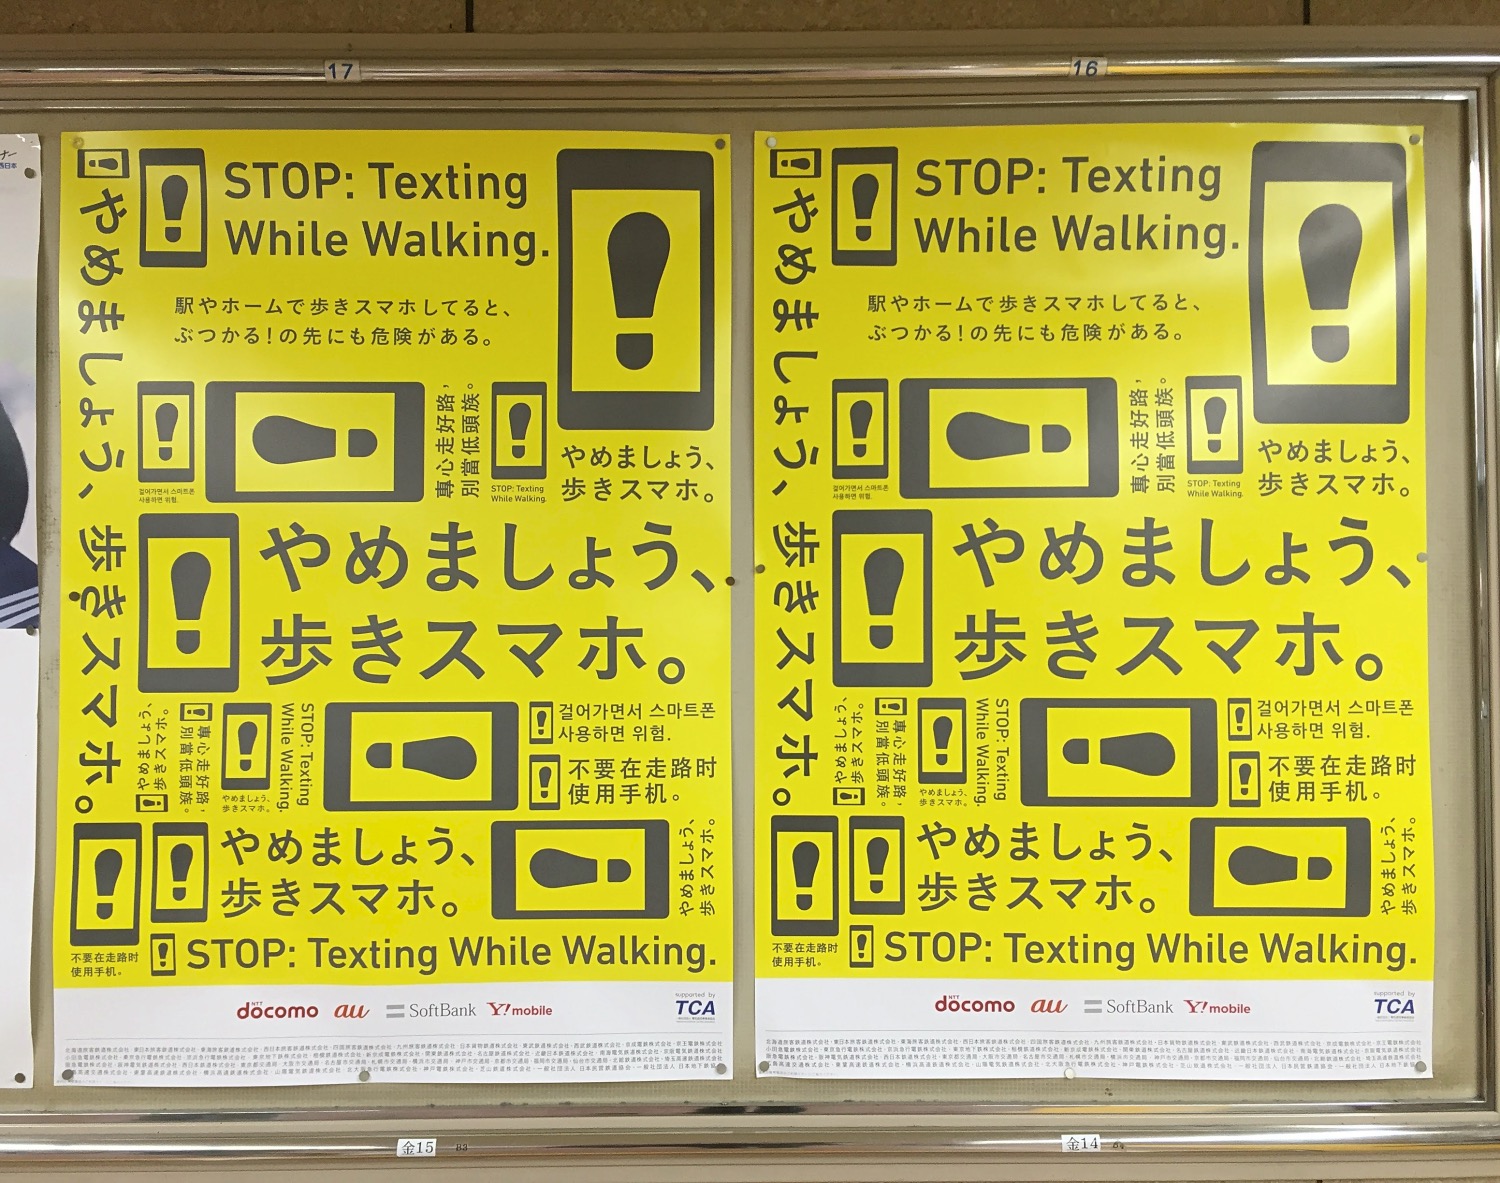 Eine Aruki-Sumaho-Präventionskampagne der grossen Telekomkonzerne in Japan.